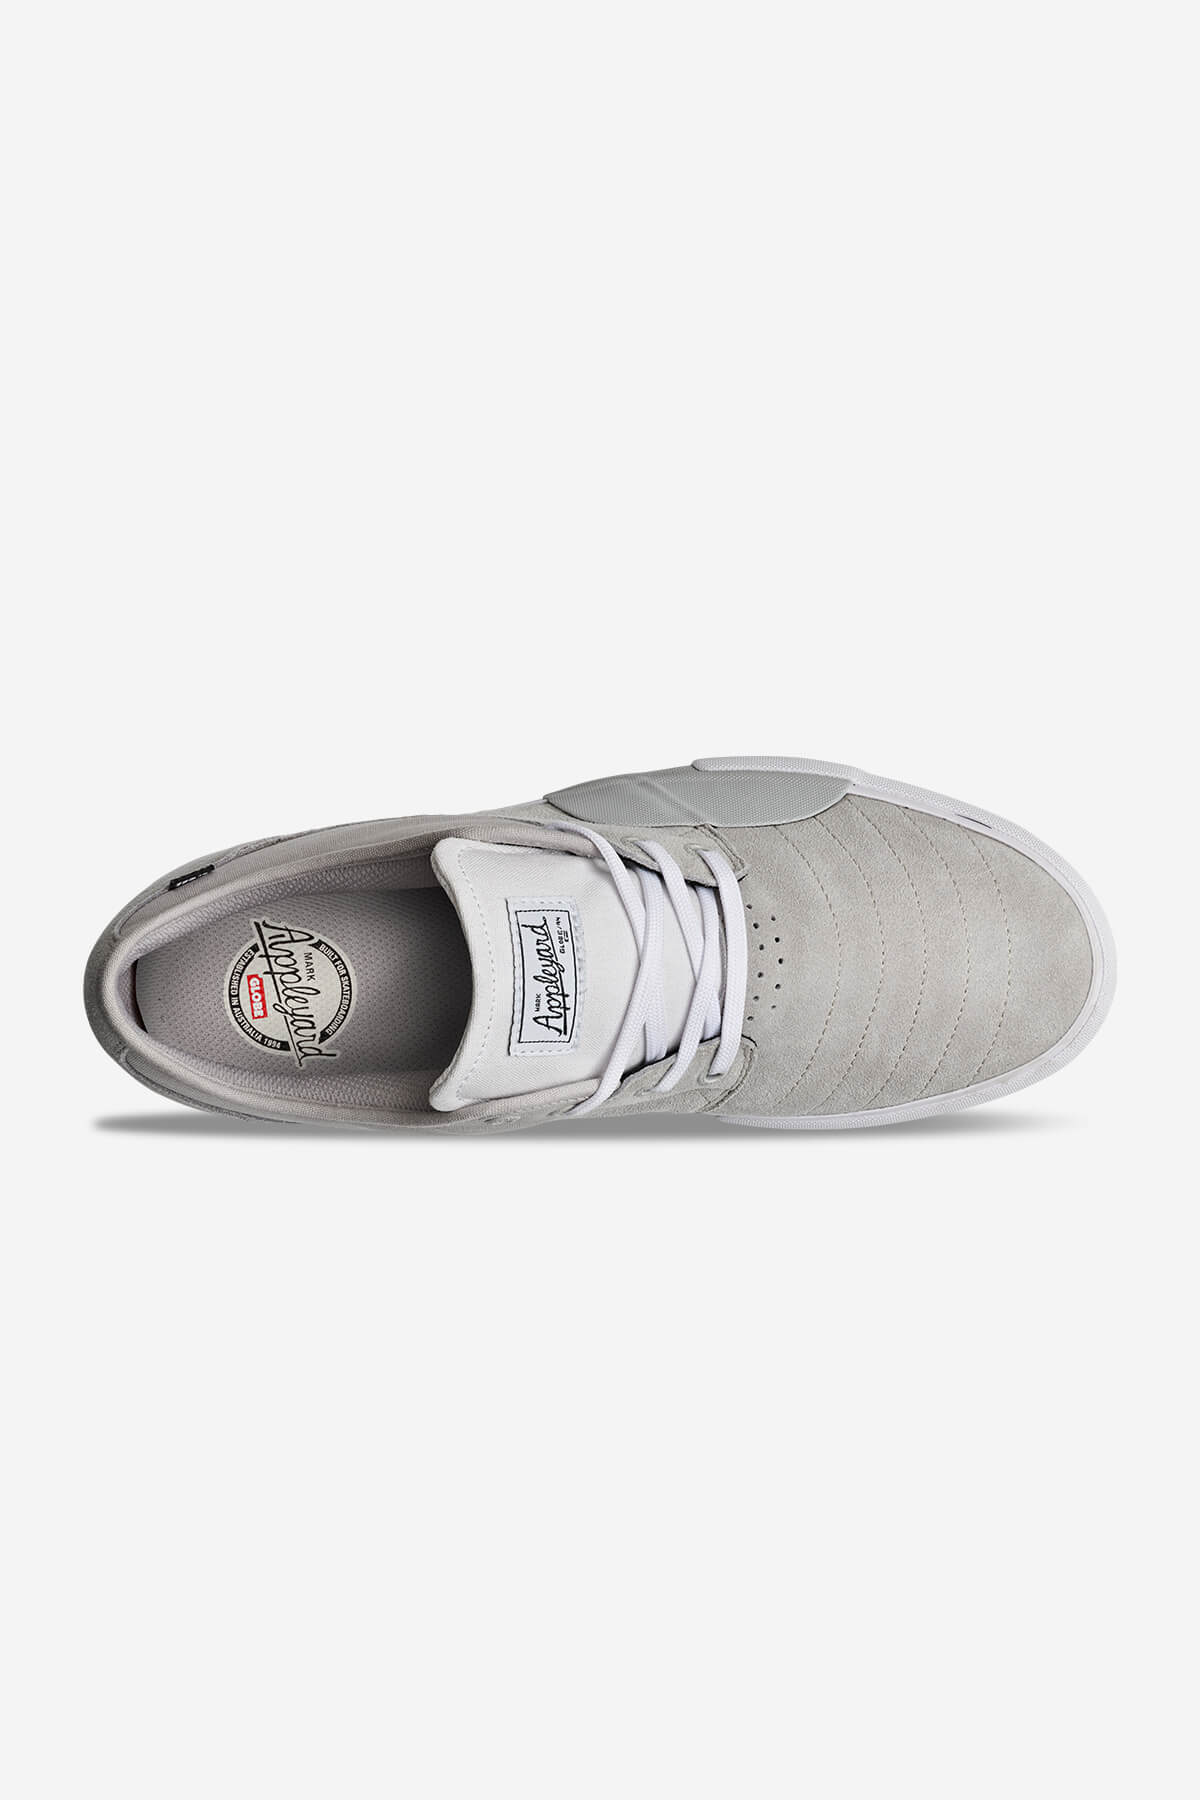 Globe - Mahalo Plus - Gris/White - skateboard Zapatos